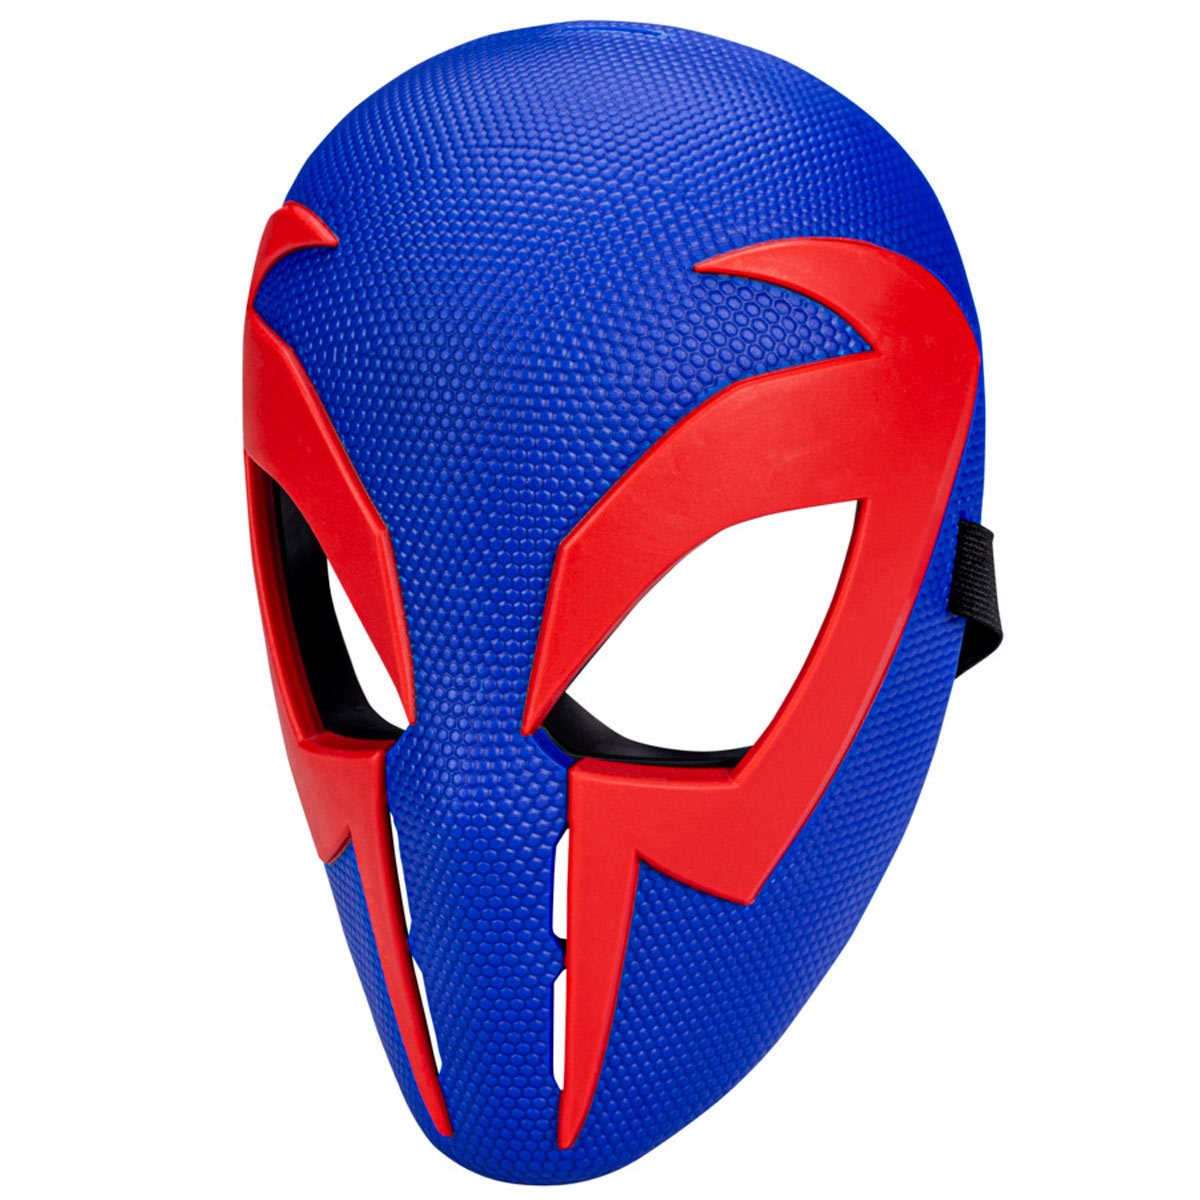 Spider-Verse Movie Masks